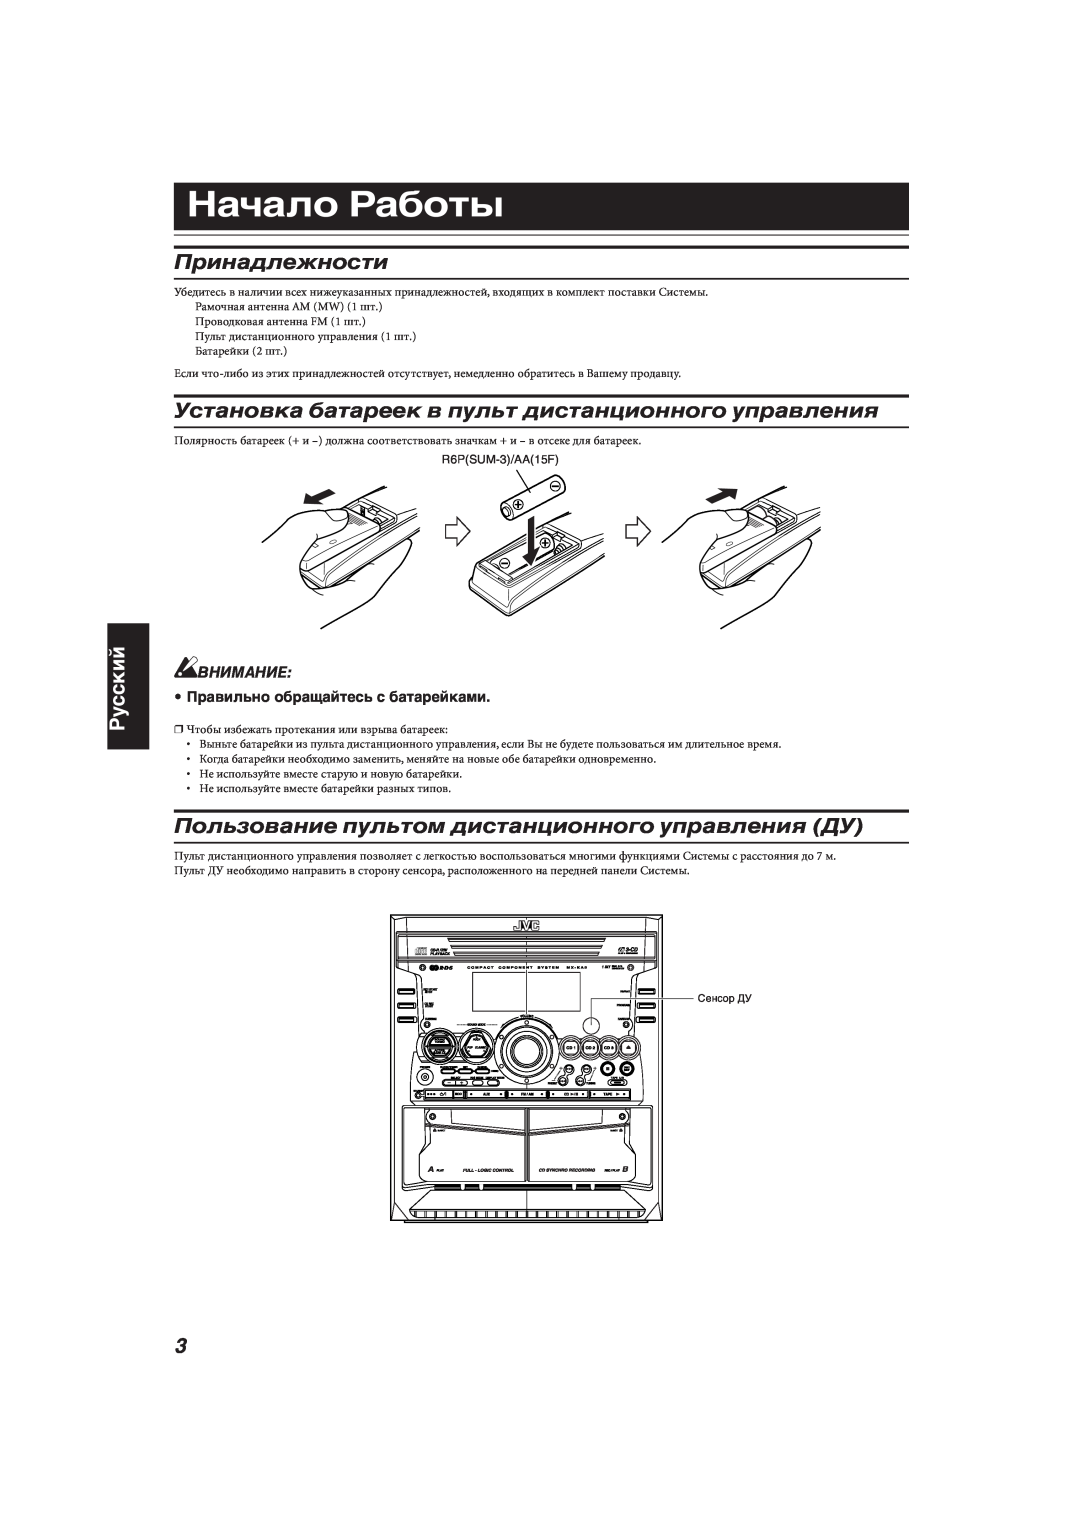 JVC MX-KA66 manual Начало Работы, Принадлежности, Пользование пультом дистанционного управления ДУ, Русский, Внимание 